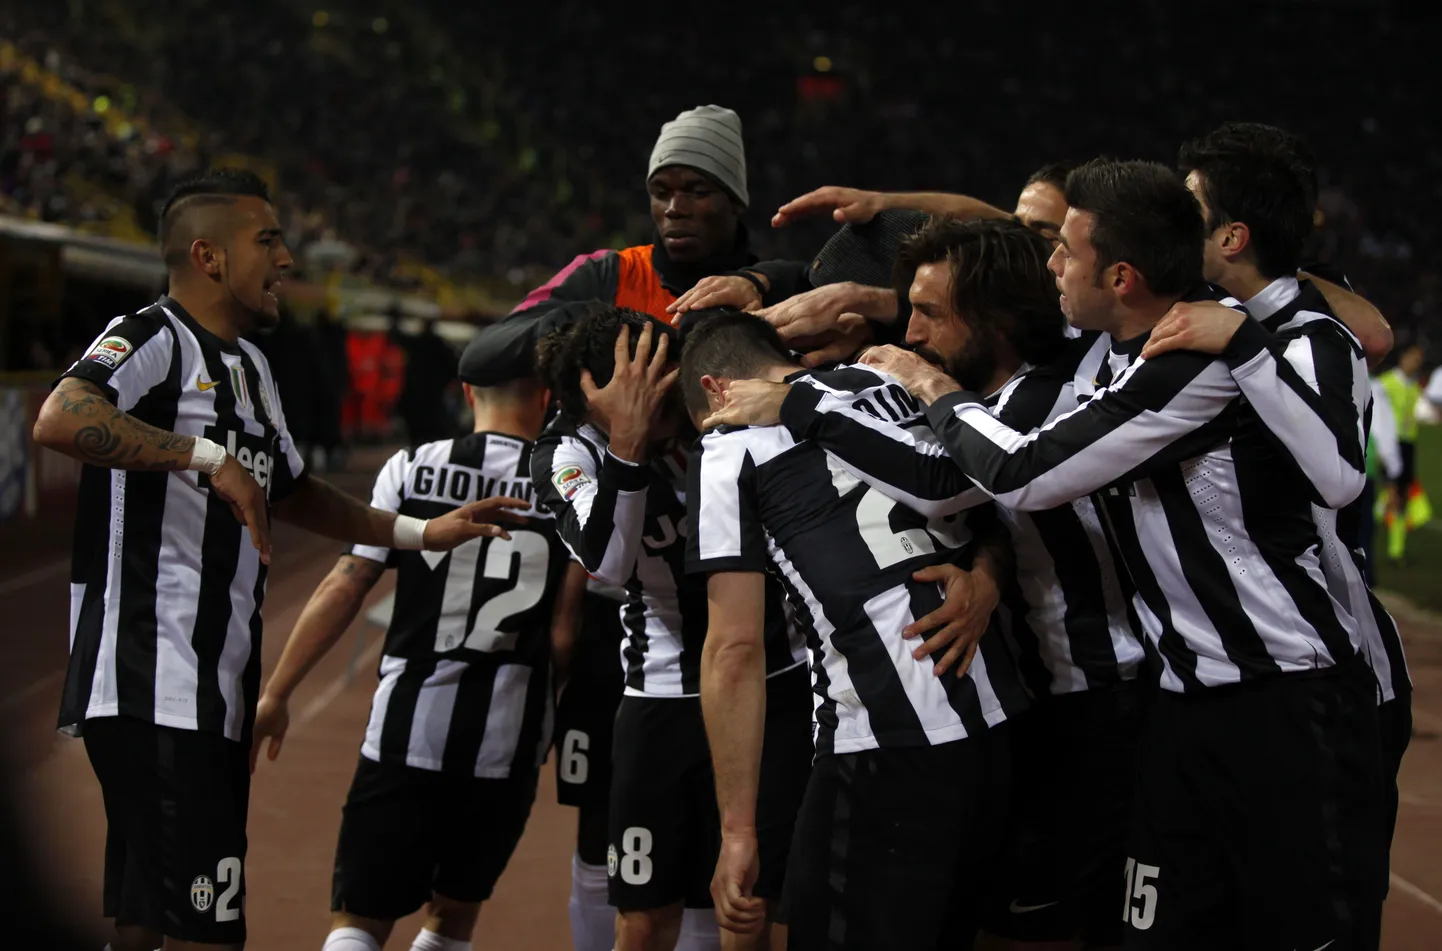 Torino Juventuse mängijad võitu tähistamas